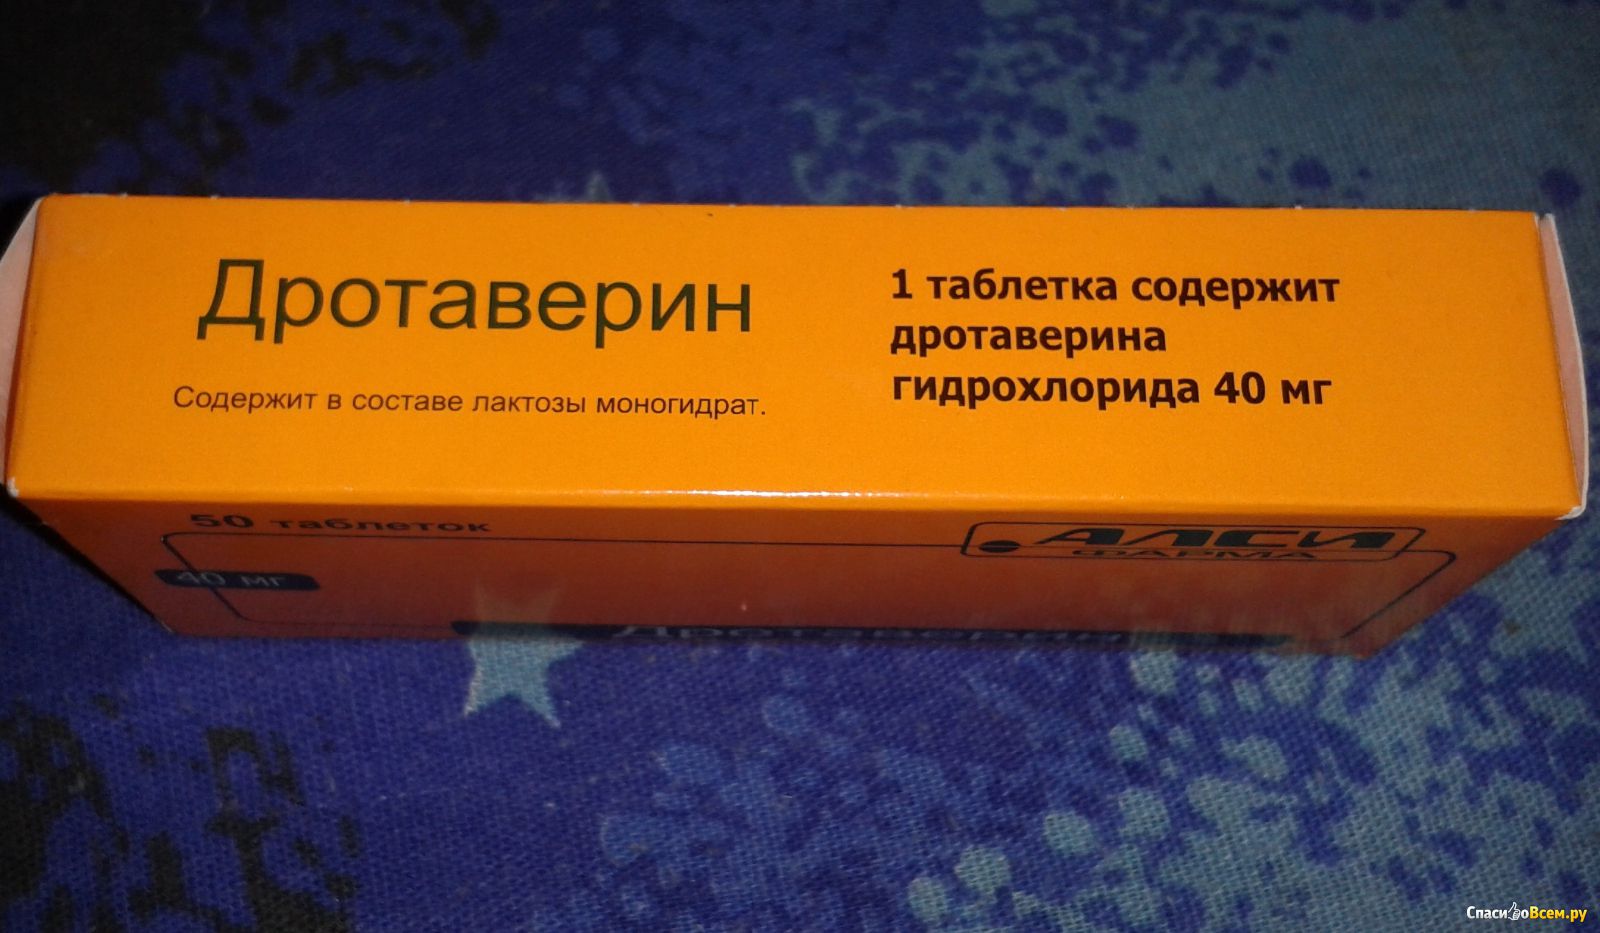 Таблетки дротаверин отзывы. Дротаверин таблетки. Дротаверин цвет таблетки. Дротаверин в желтой упаковке.